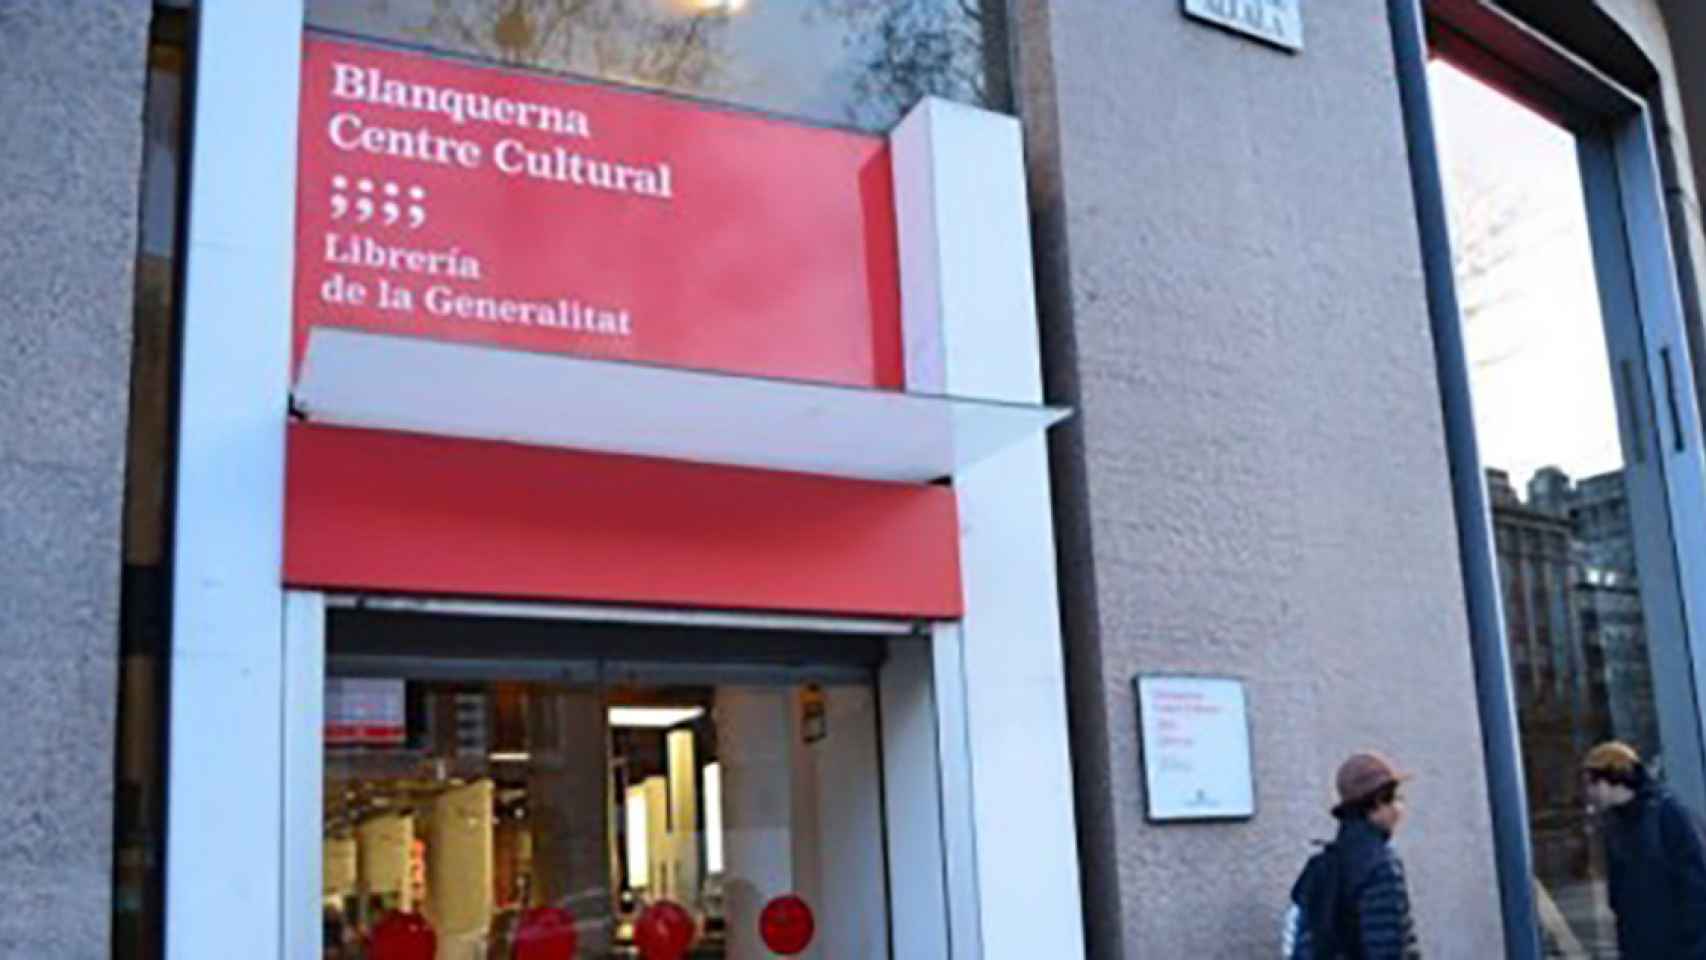 Centre Cultural Blanquerna, dependiente de la Delegación de la Generalitat en Madrid